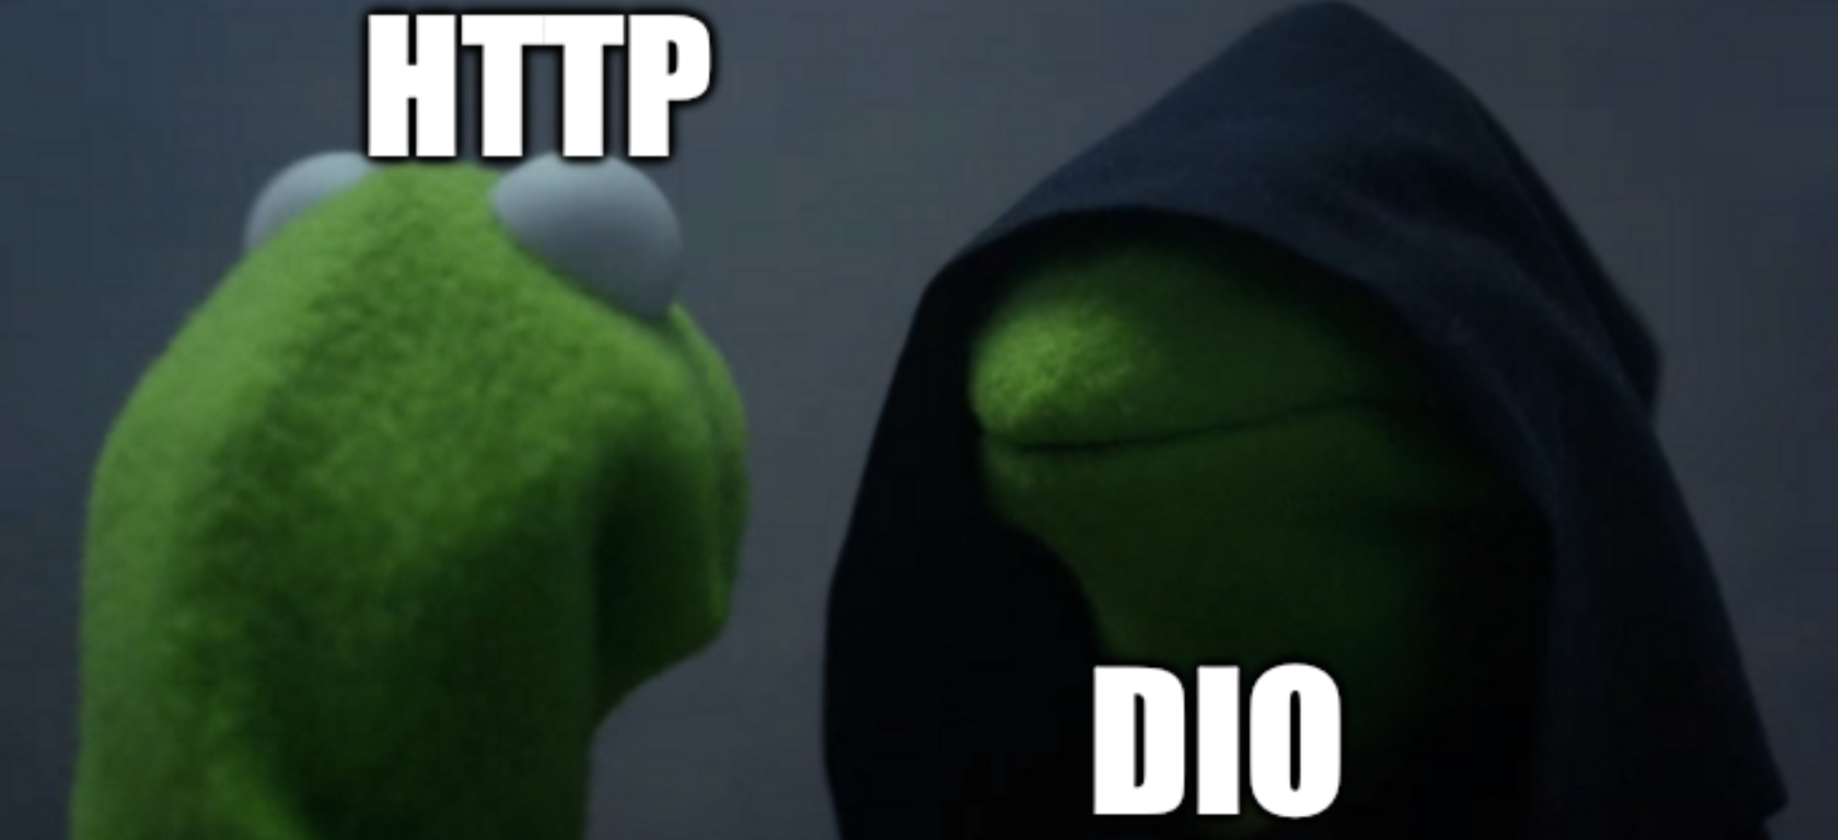 http vs DIO